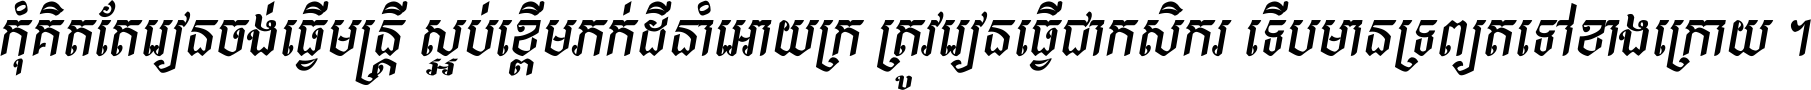 Kh Baphnom Chhuoktip New Italic